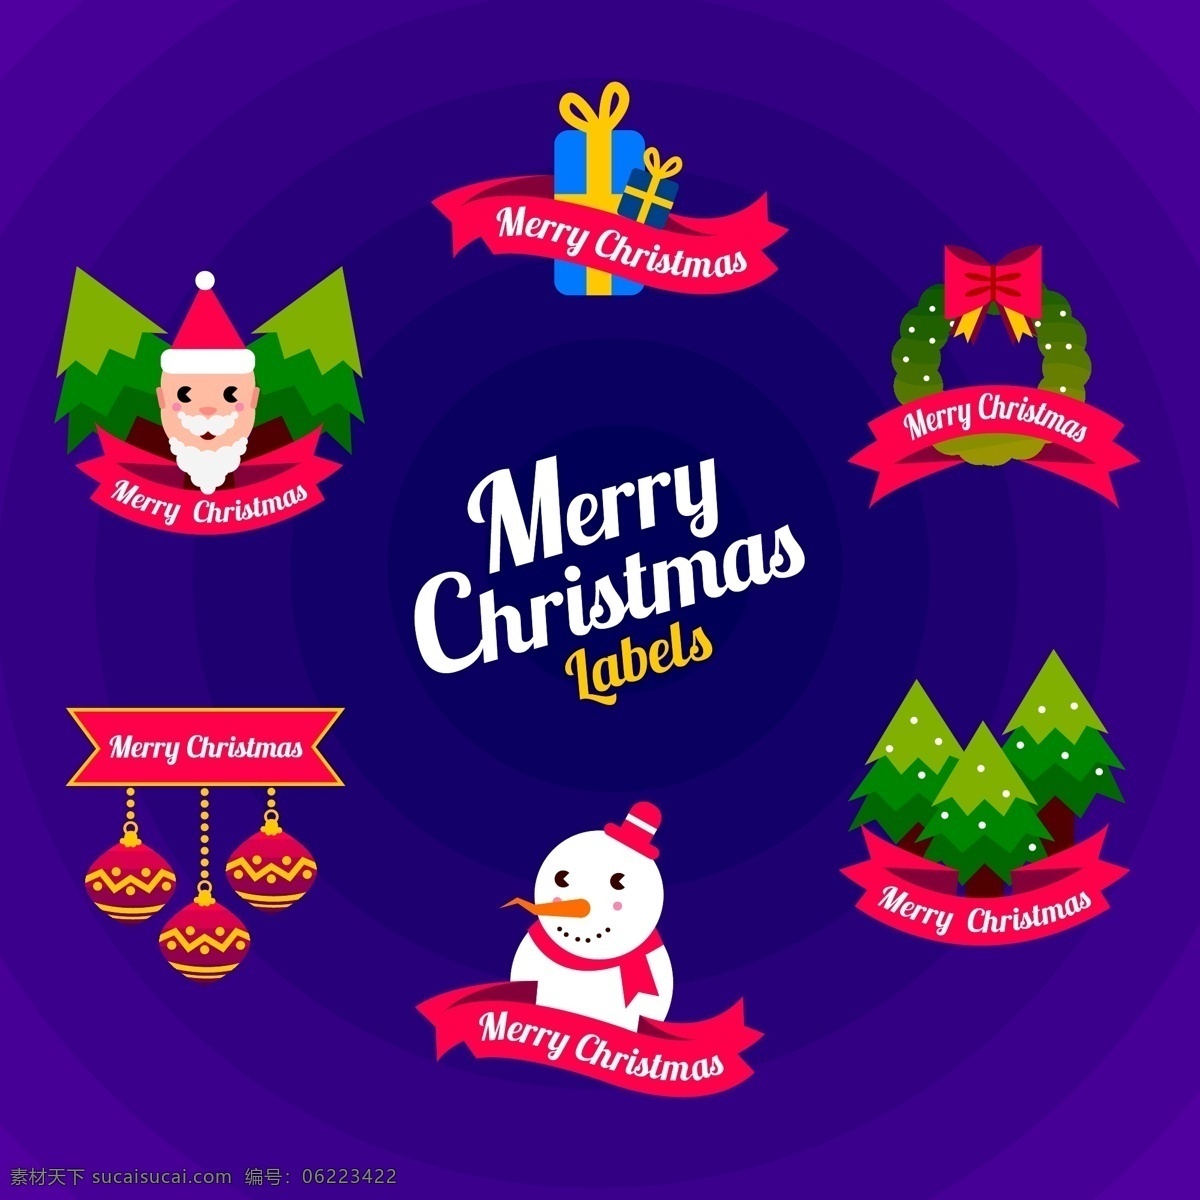 创意 可爱 圣诞节 标签 礼物 圣诞树 矢量素材 彩色 圣诞老人 花环 雪人 英文